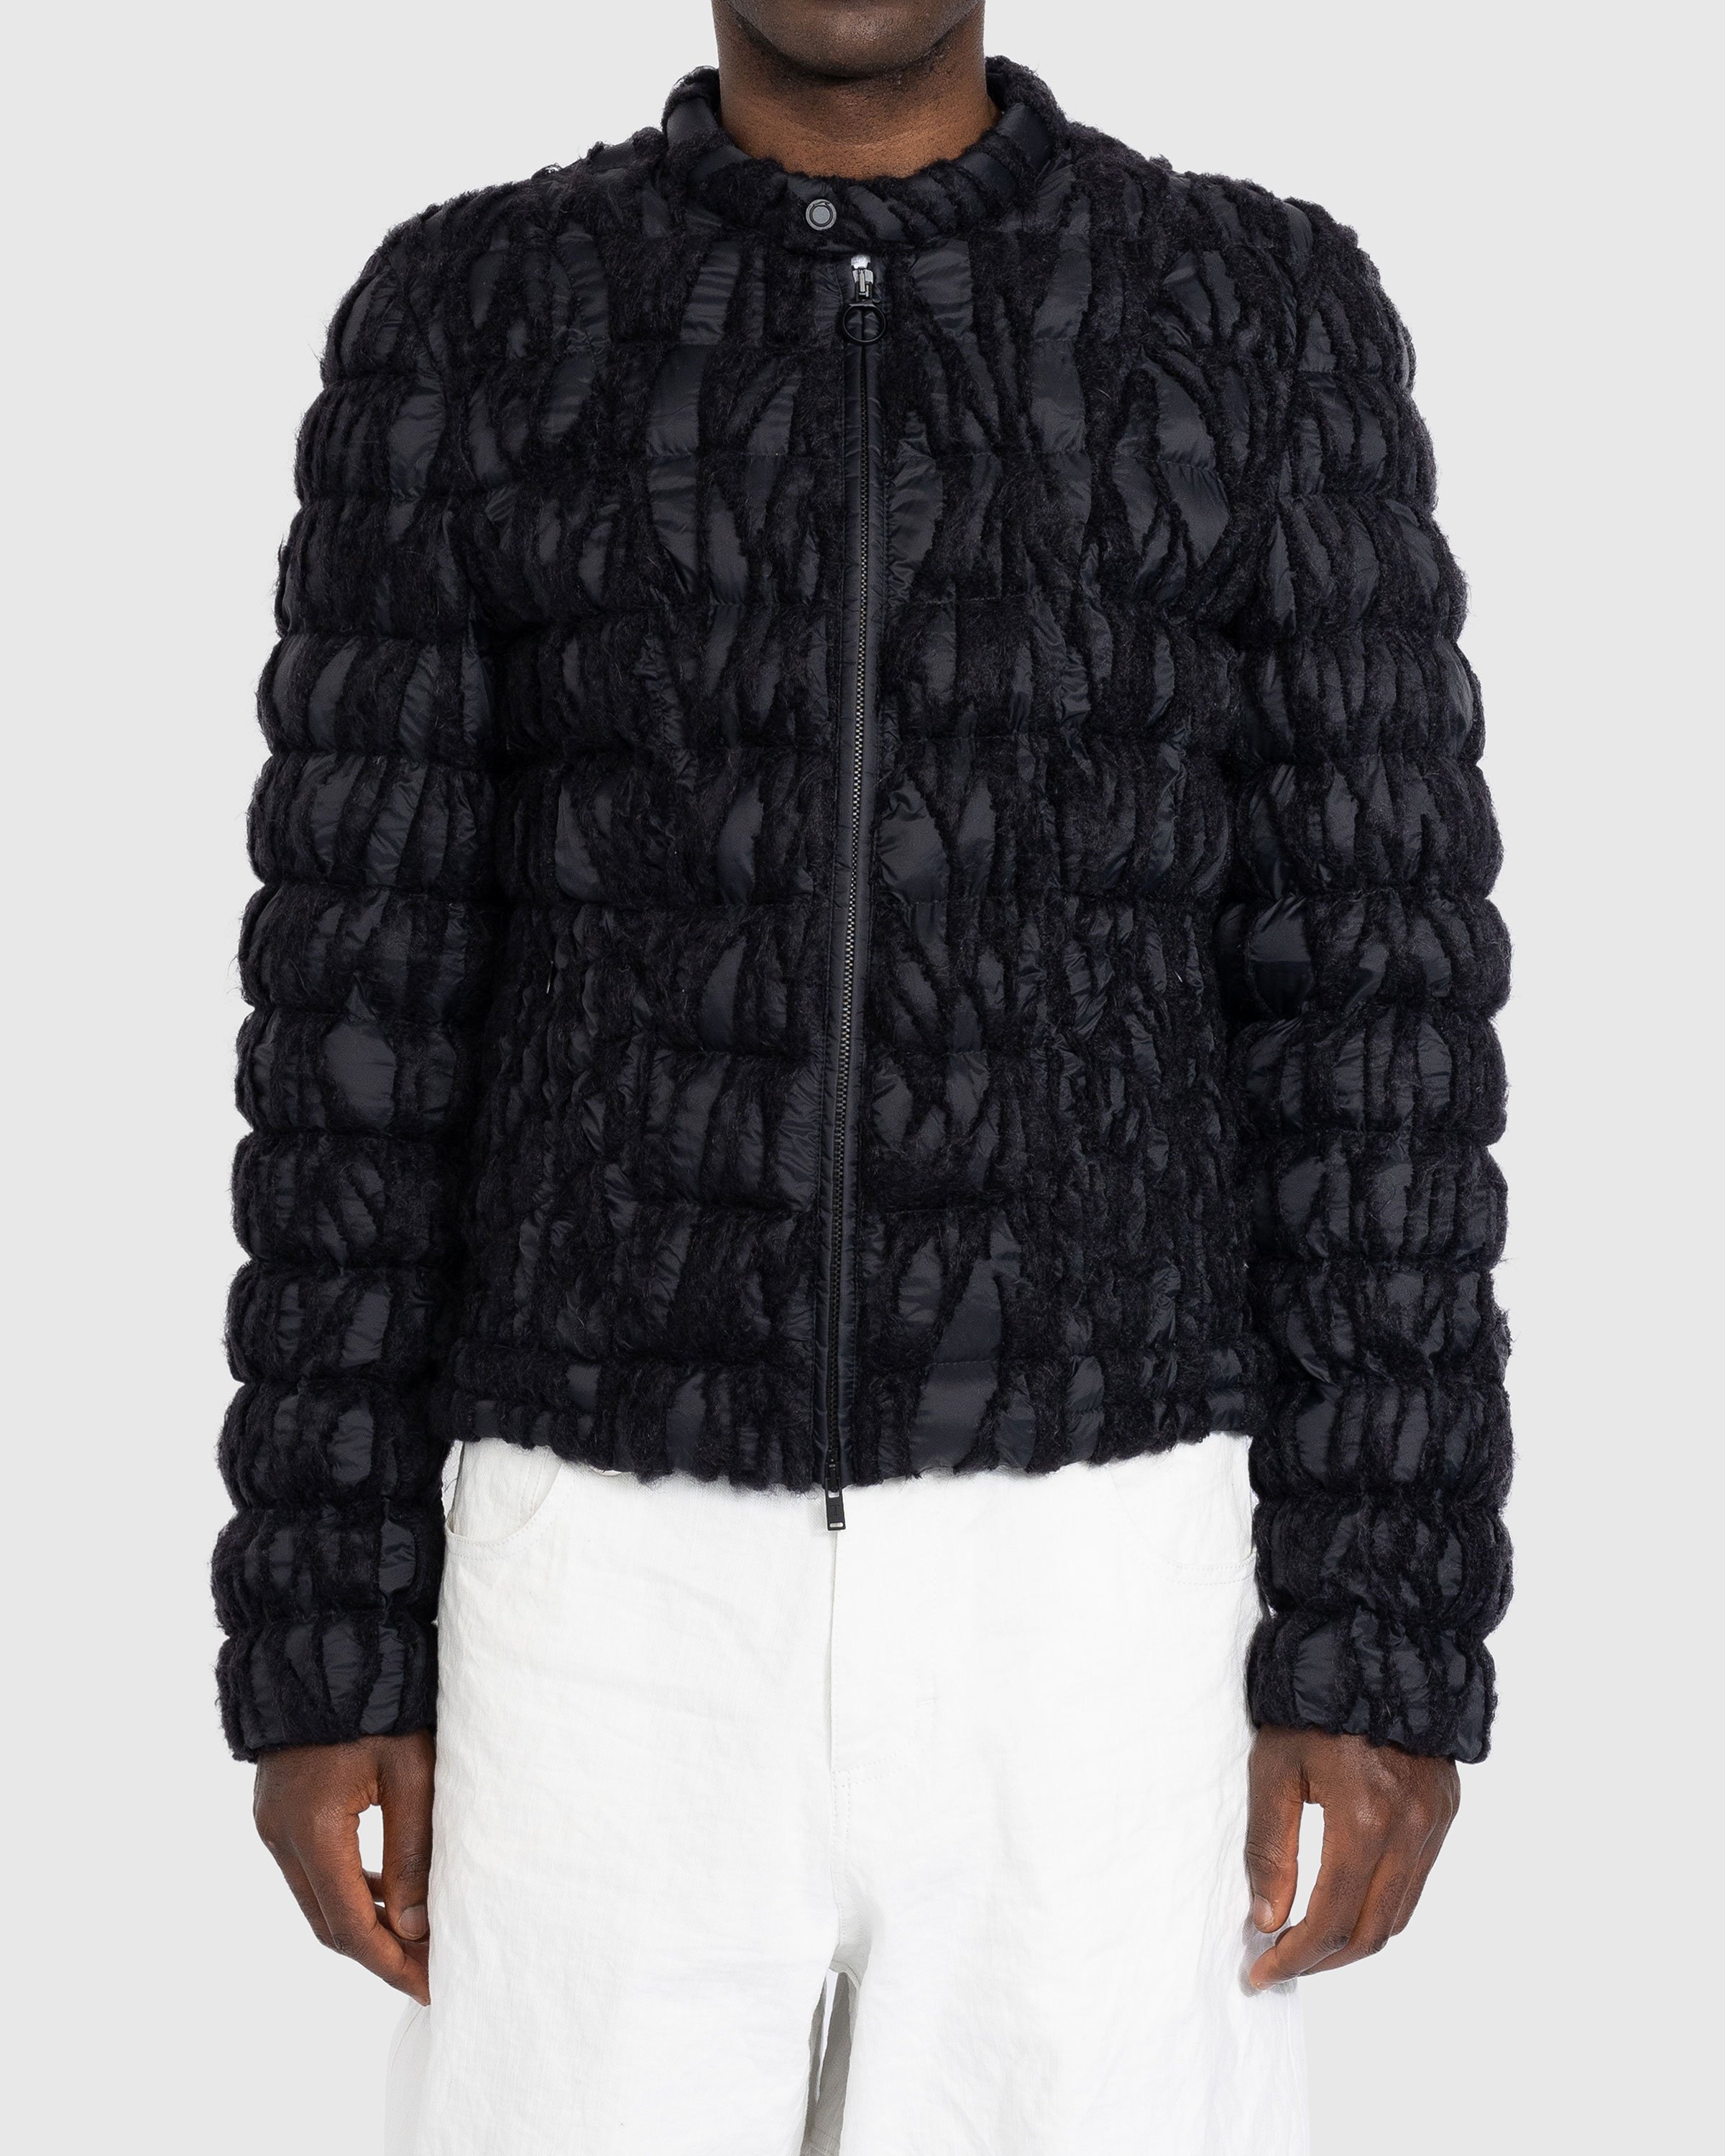 Trussardi - Embroidered Nylon Jacket Black - Clothing - Black - Image 2